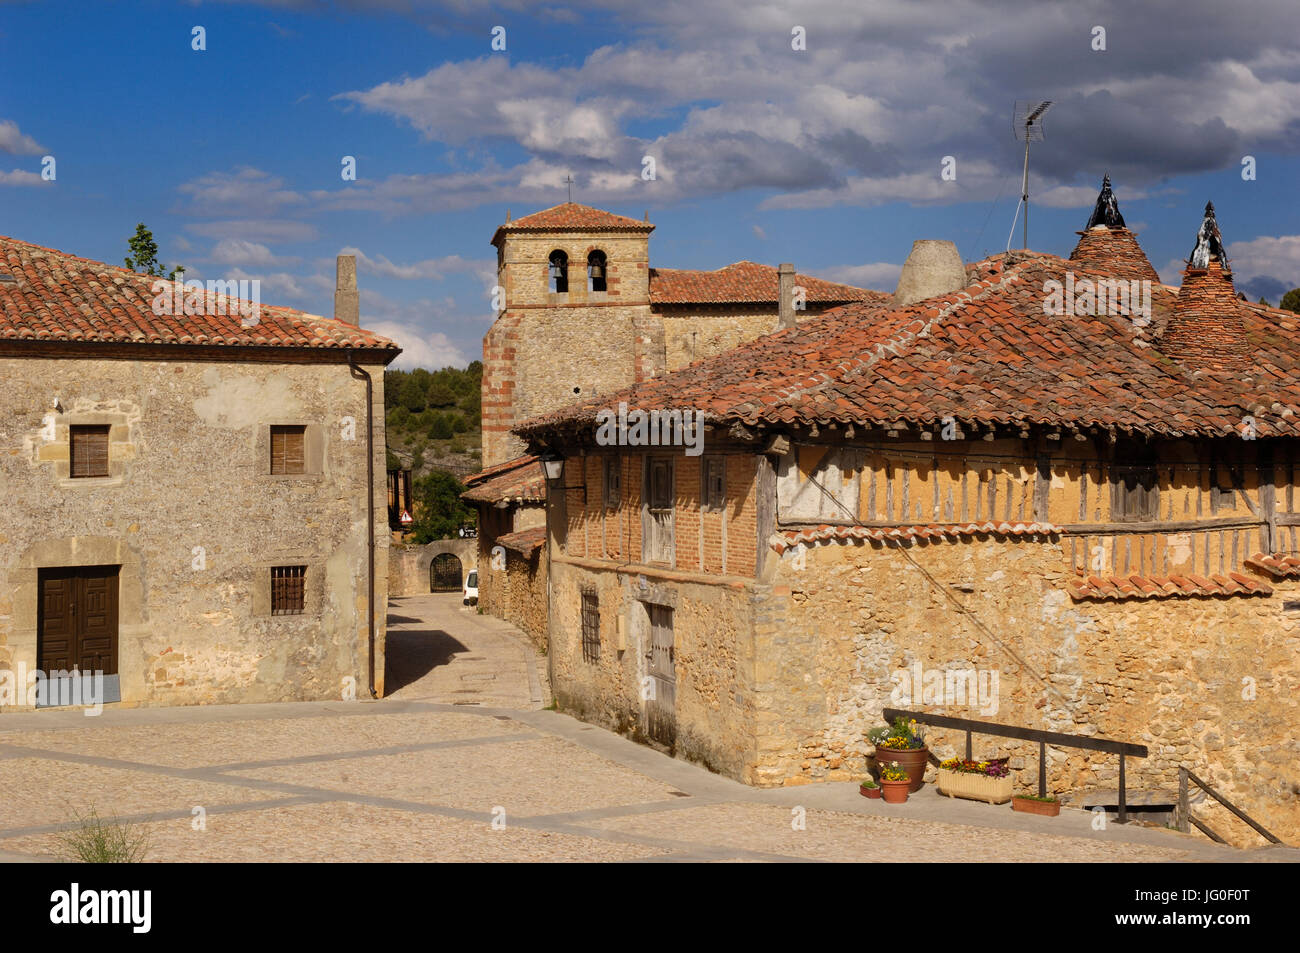 Village of Catalañazor, Soria province, Castilla y León, Spain Stock Photo